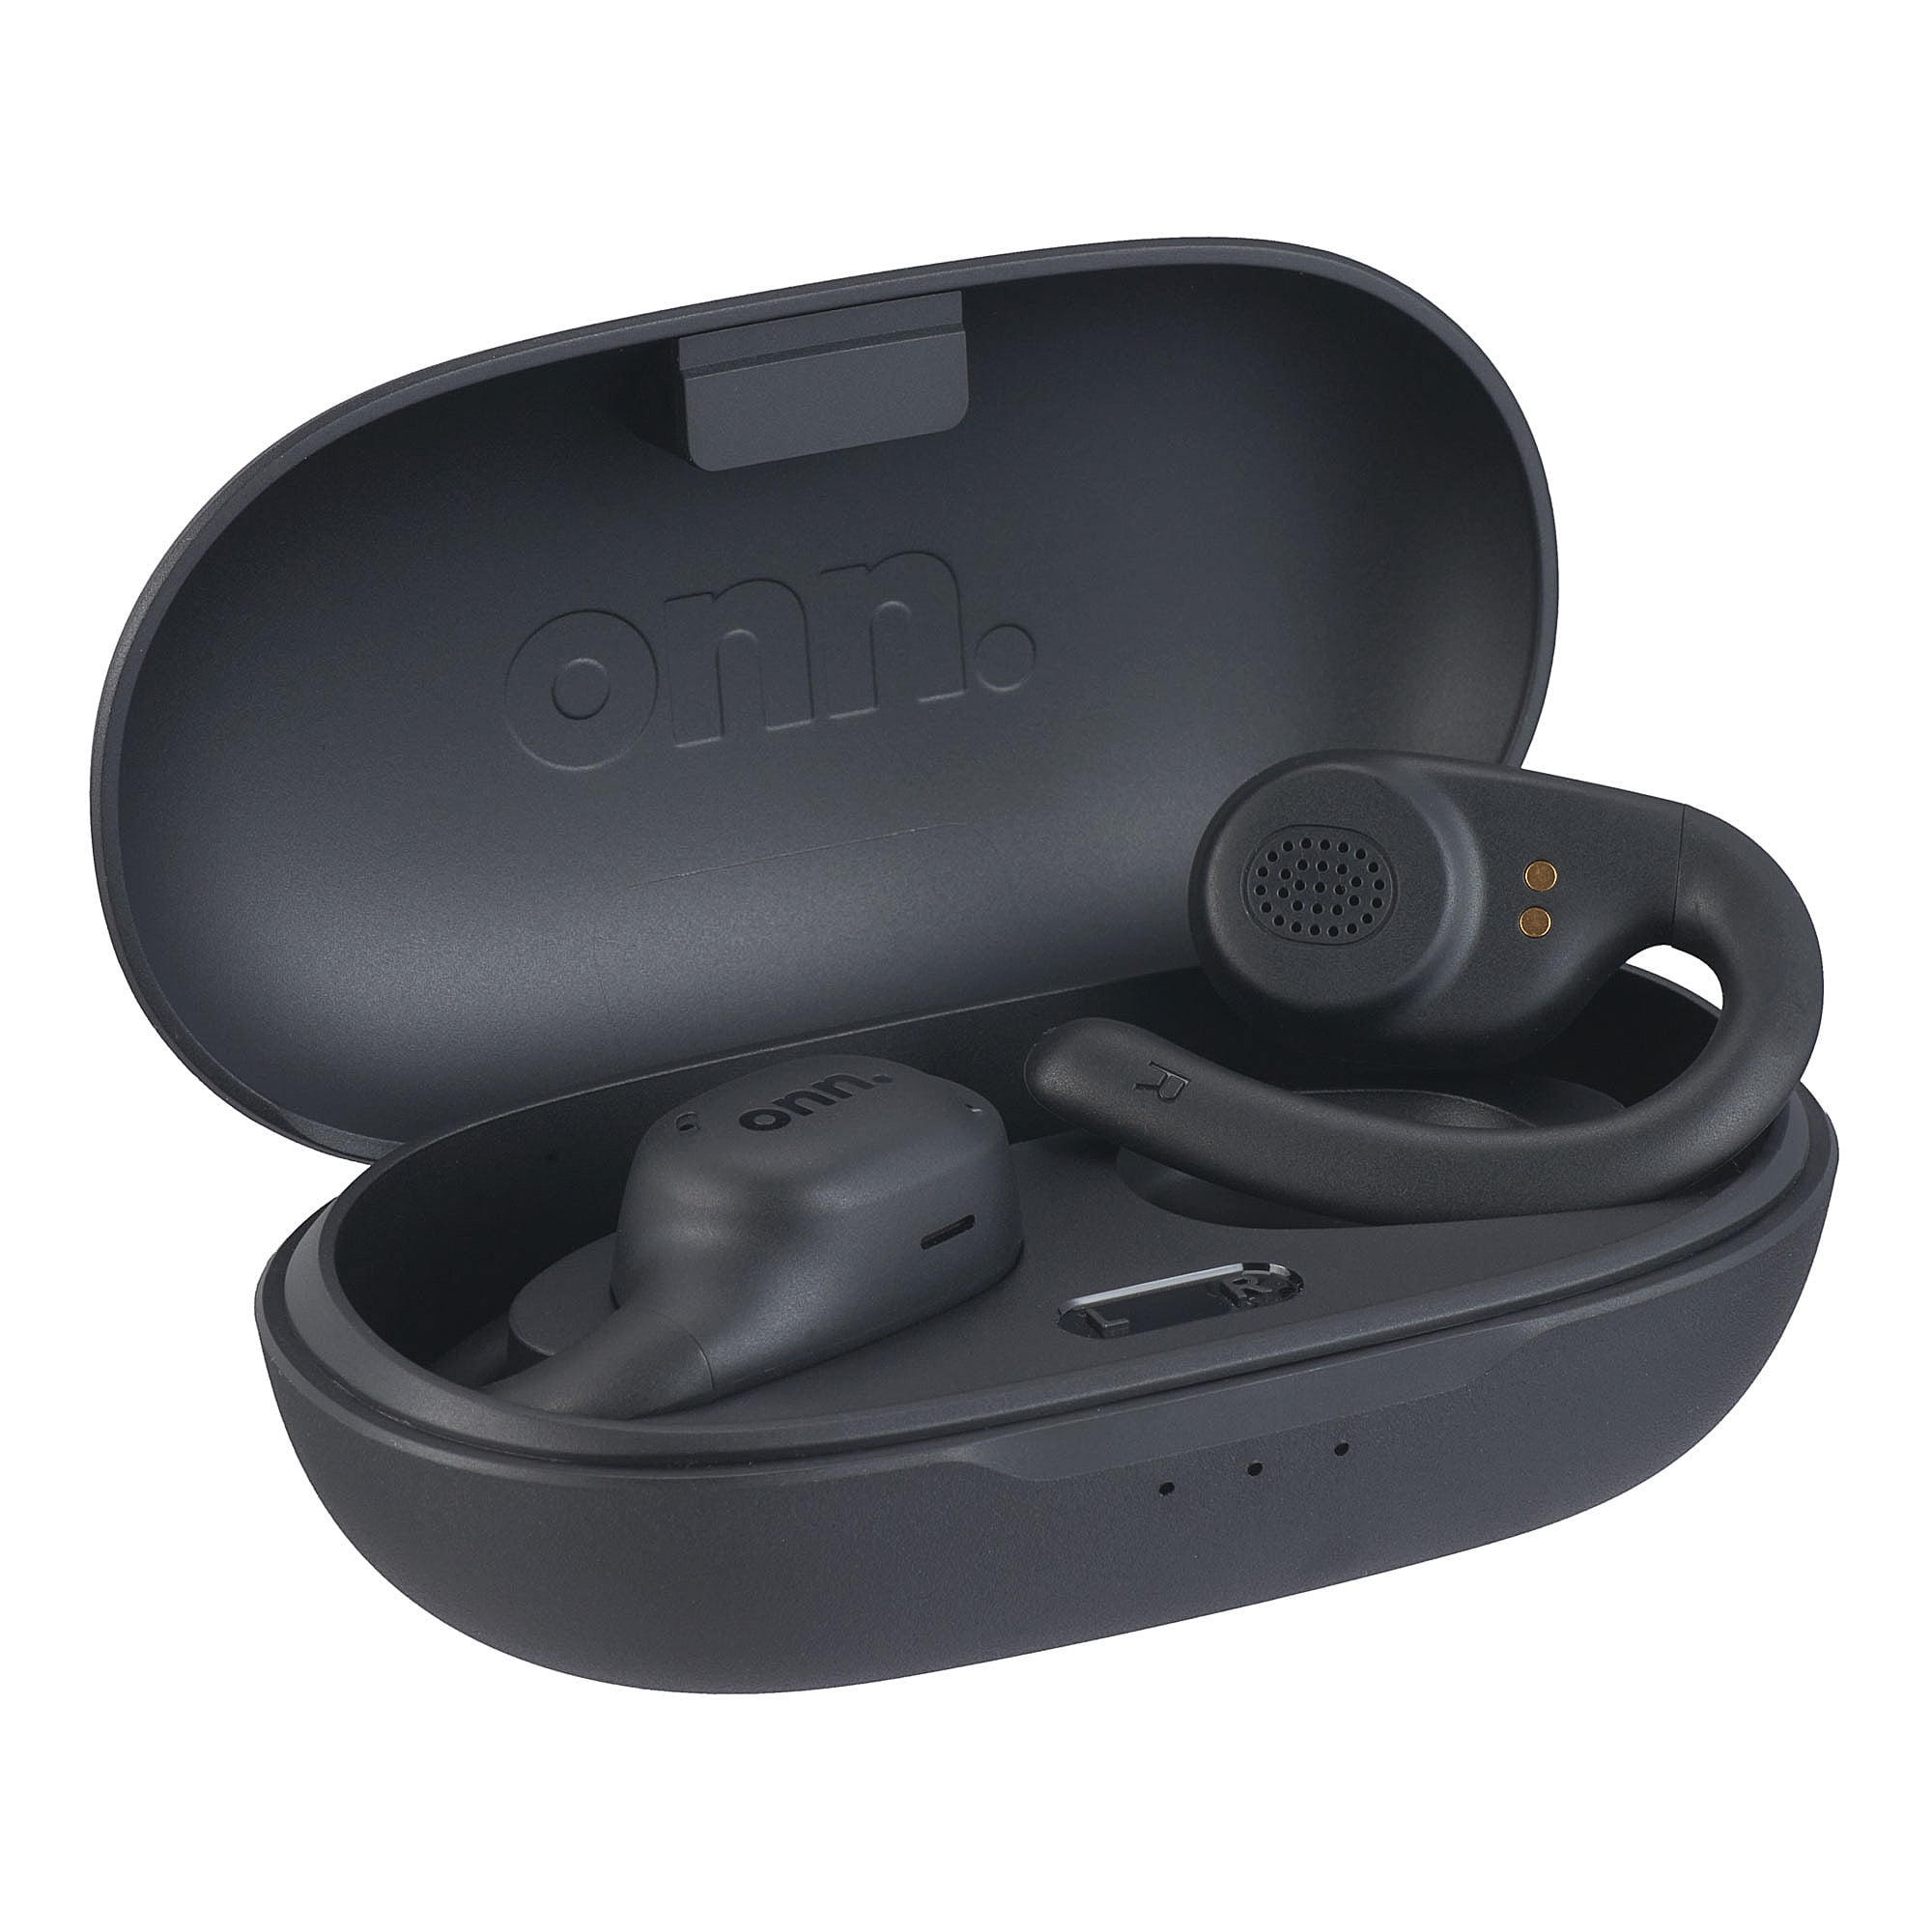 onn. Over-Ear Bluetooth Wireless Open-Ear Earphones with Wireless Charging Case, Black